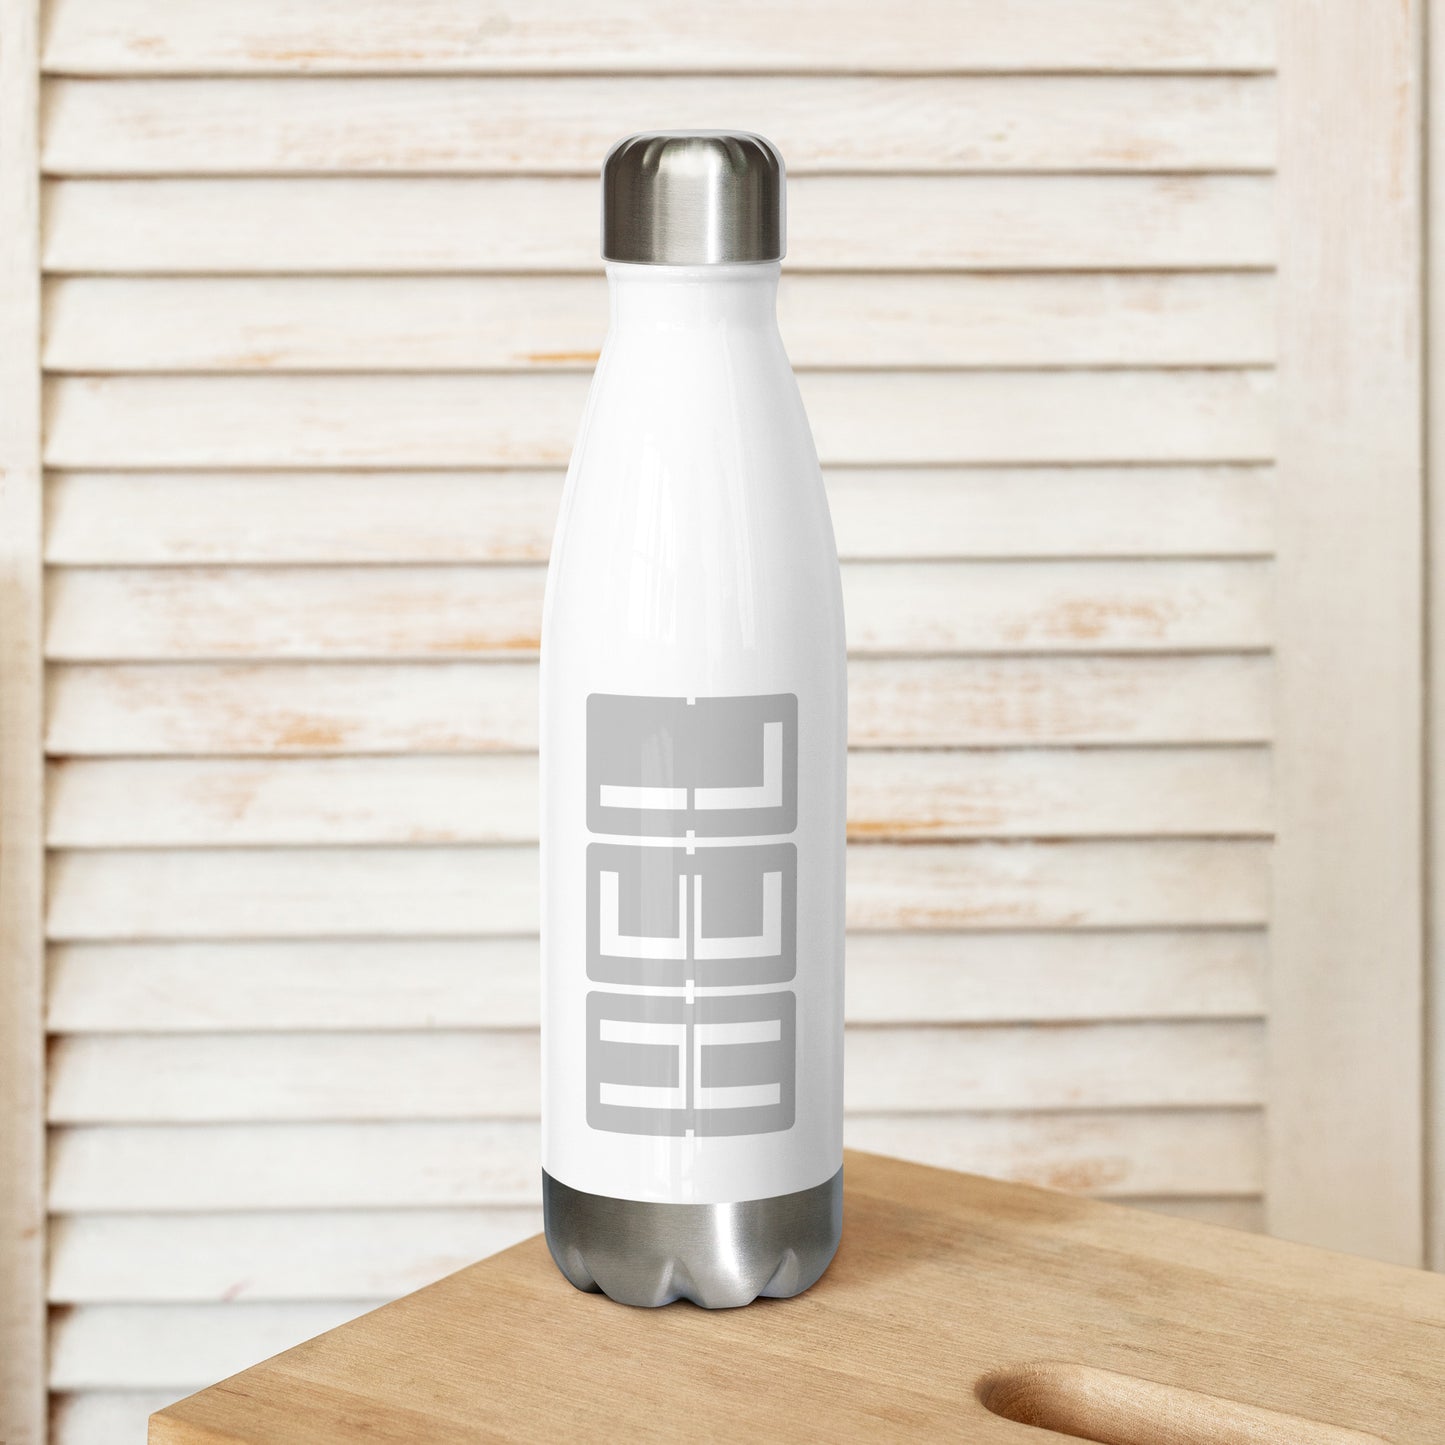 Split-Flap Water Bottle - Grey • HEL Helsinki • YHM Designs - Image 02